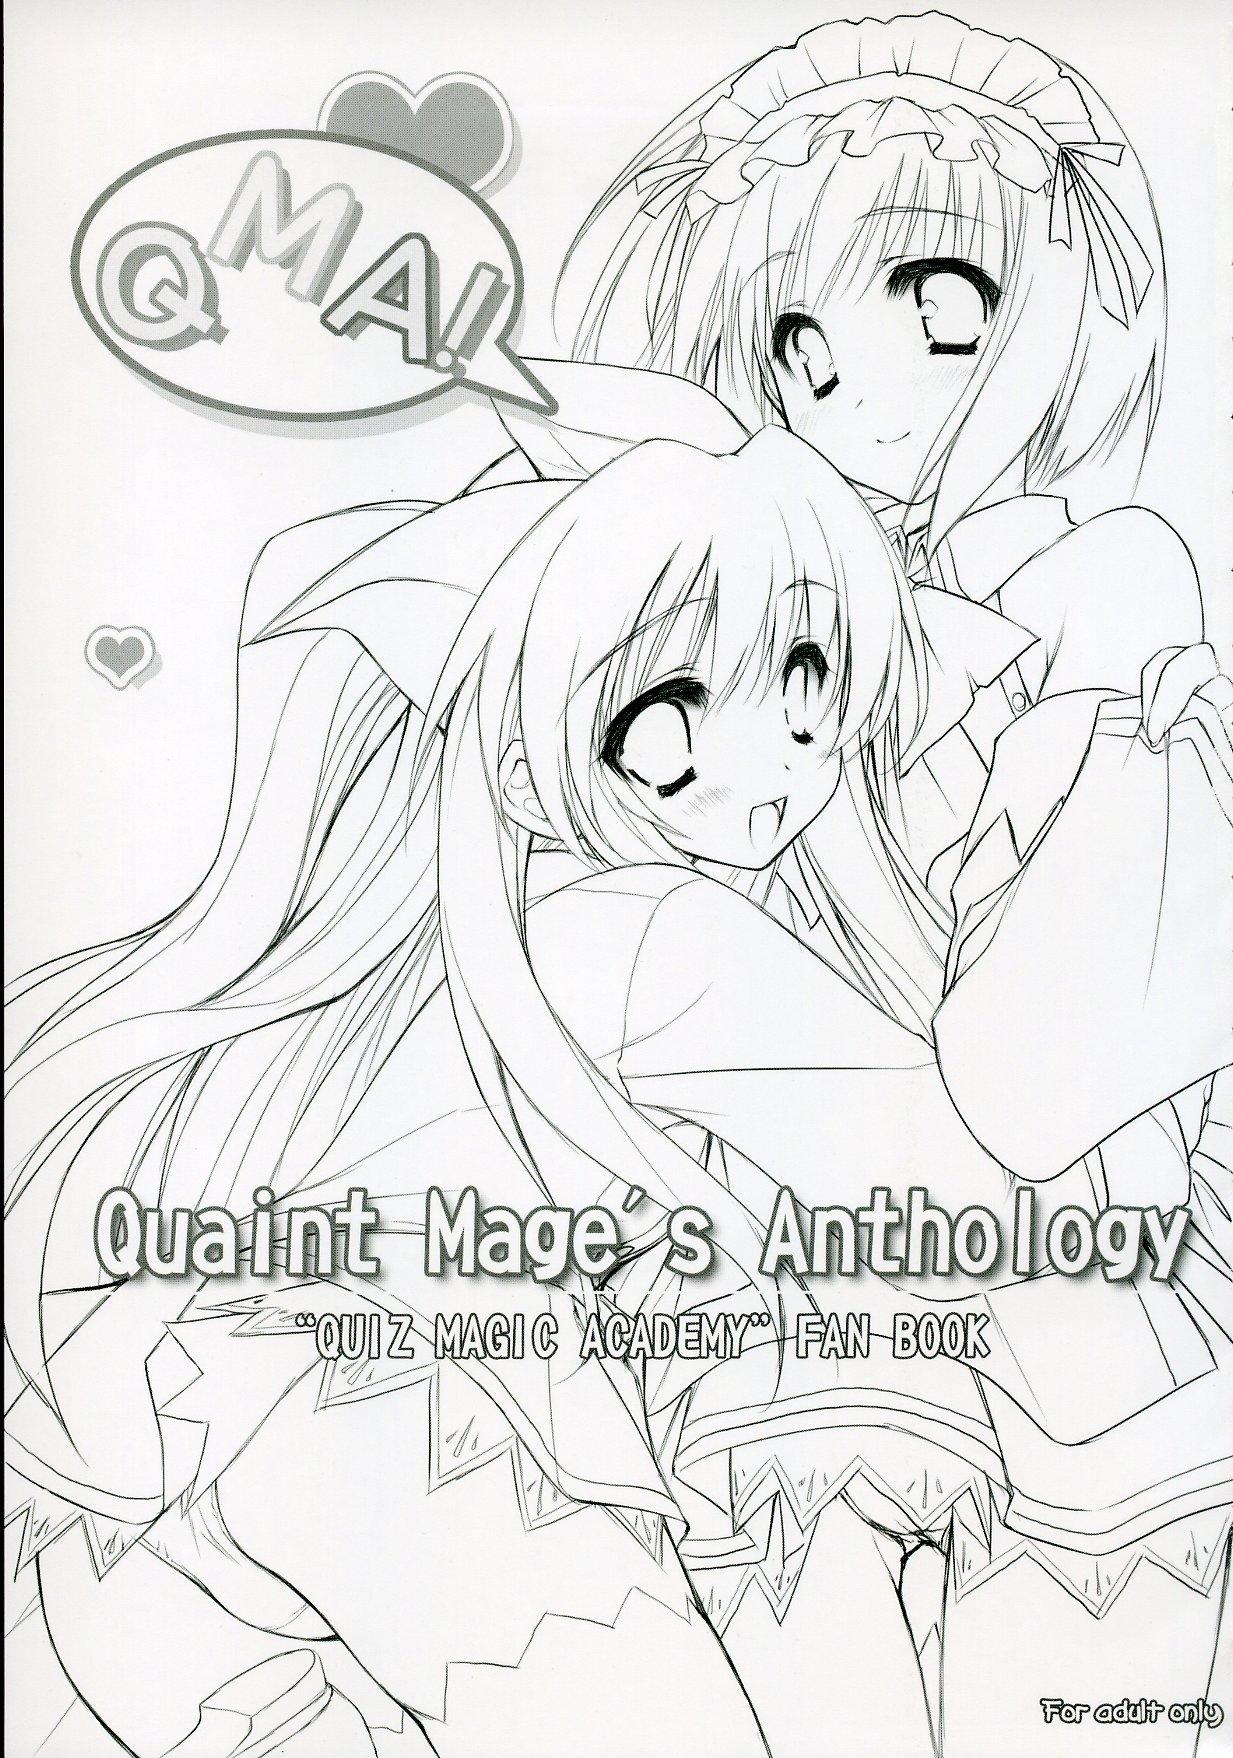 Hot Naked Girl Quaint Mage's Anthology - Quiz magic academy Cum Inside - Page 2